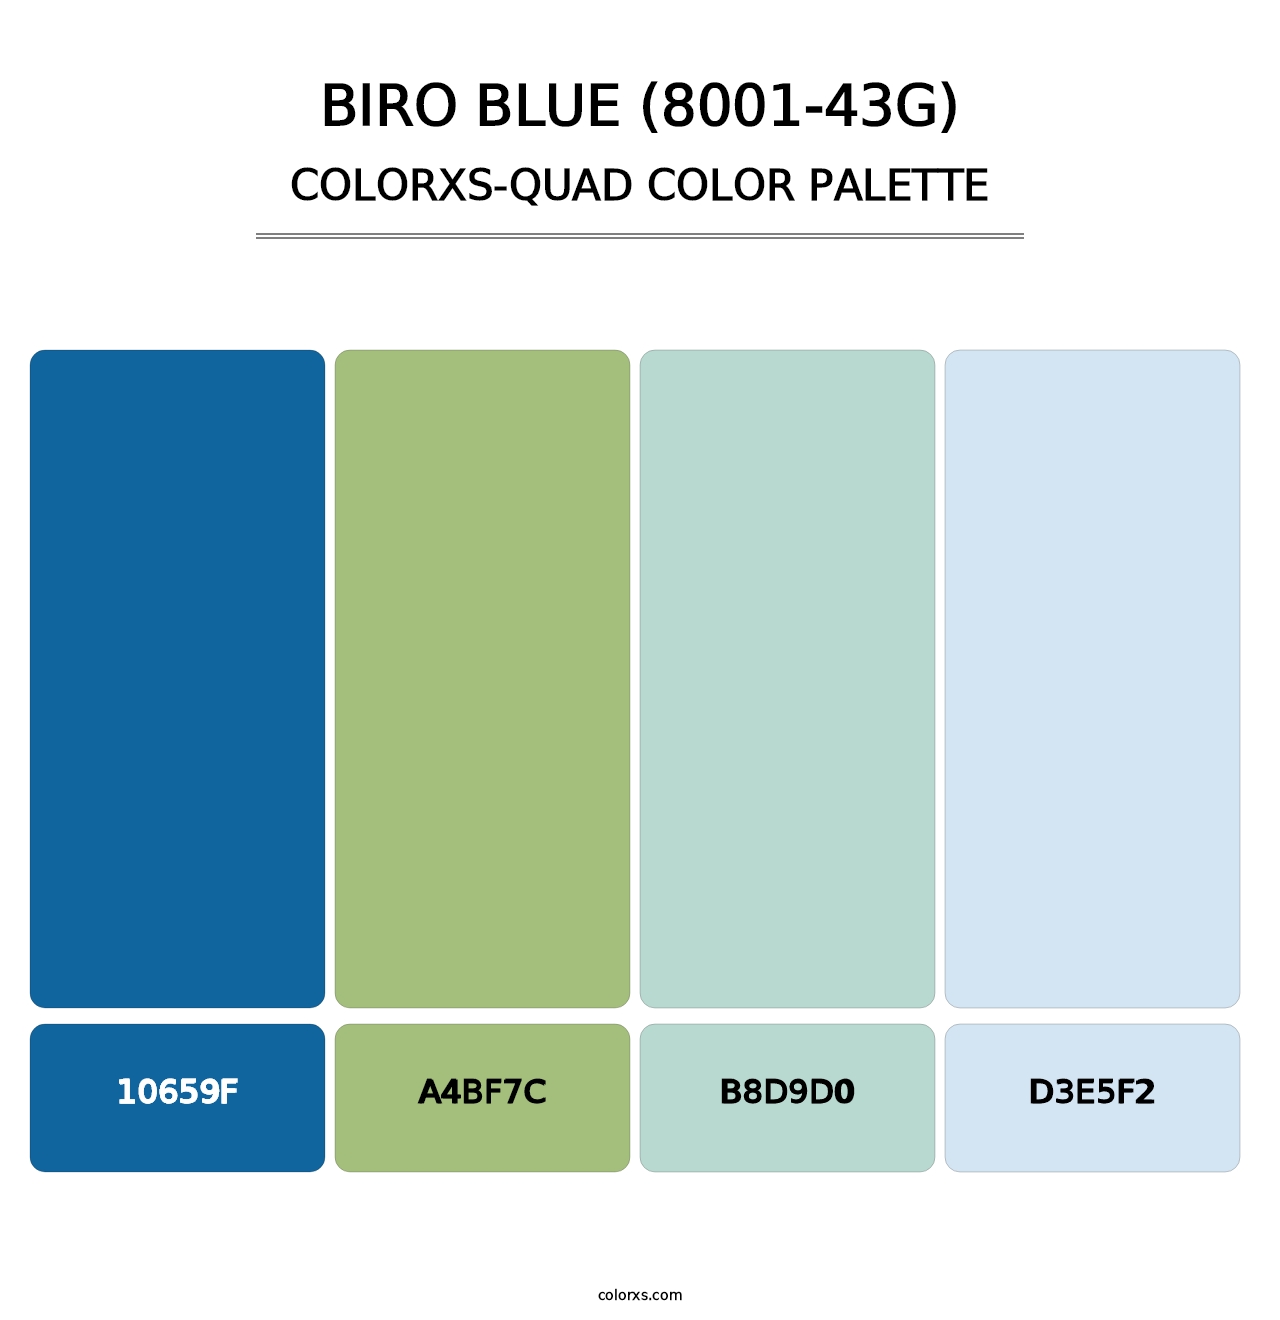 Biro Blue (8001-43G) - Colorxs Quad Palette